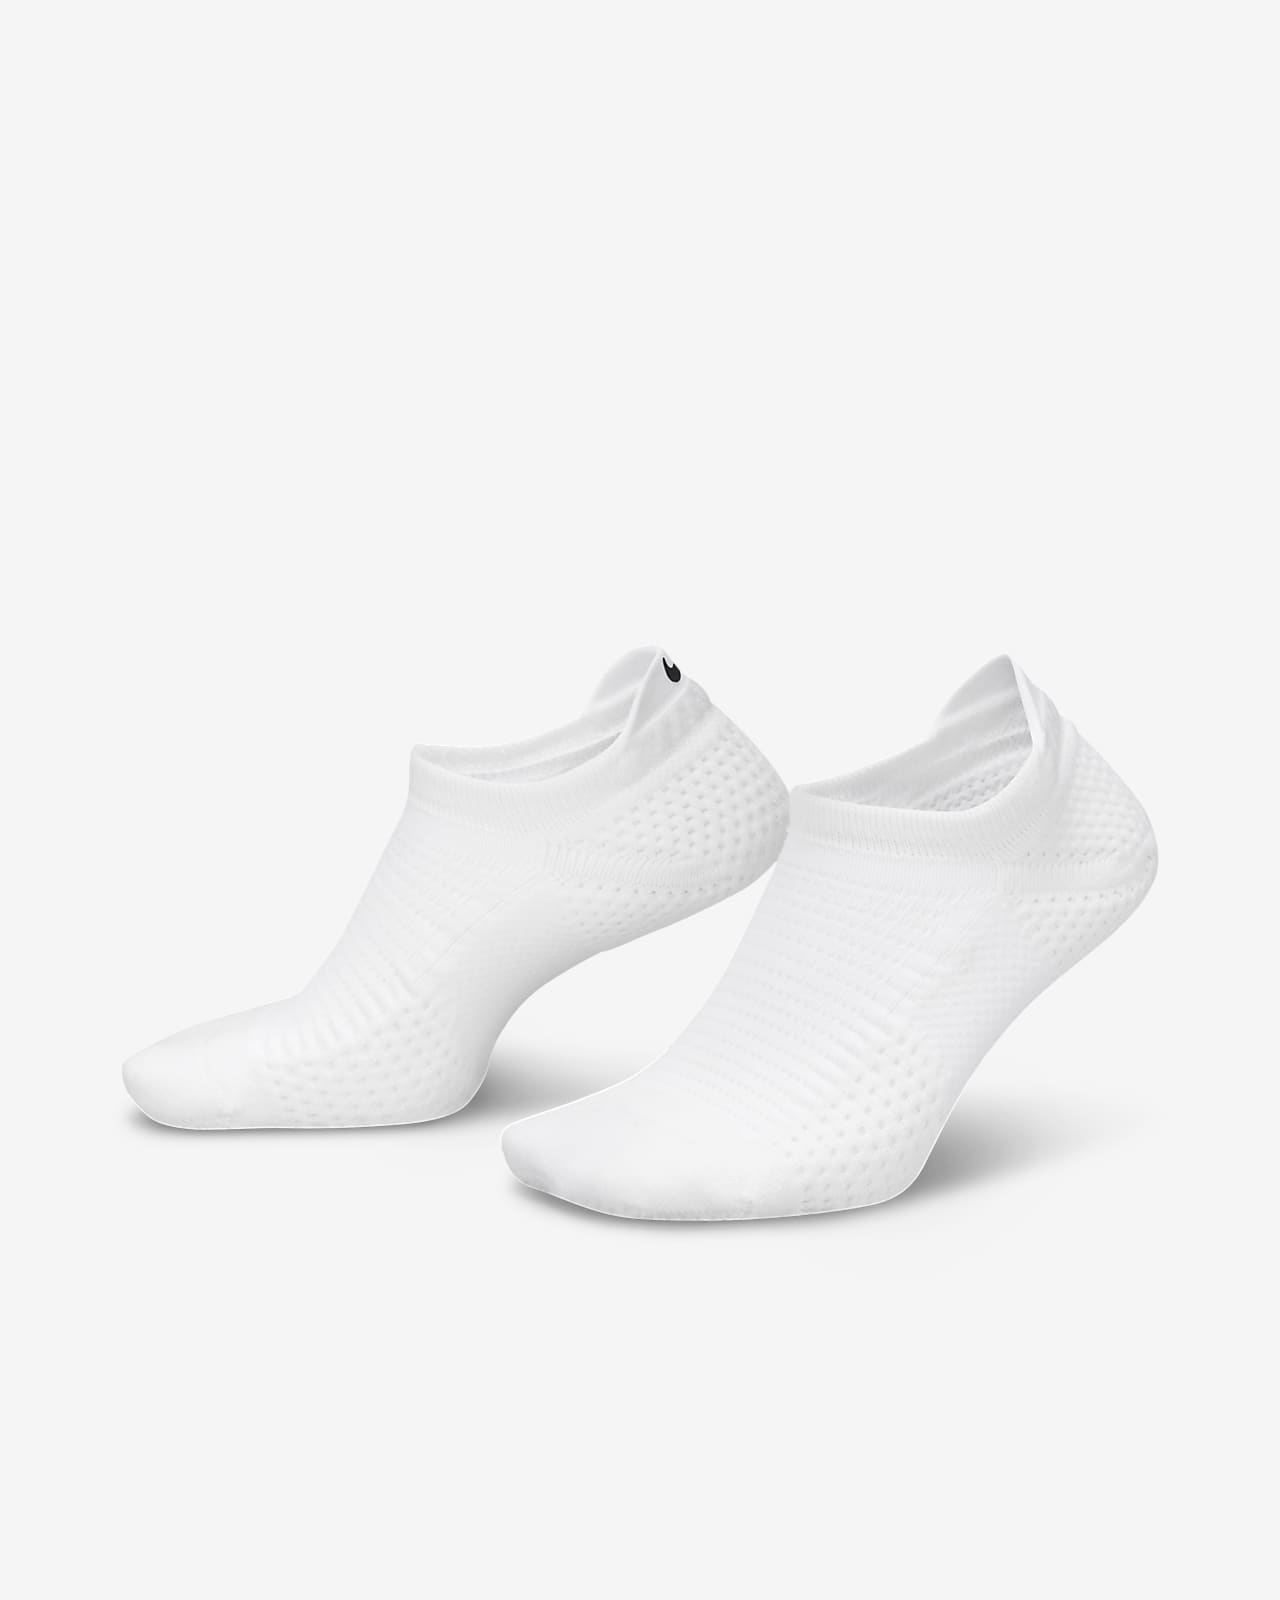 Chaussettes invisibles épaisses Nike Unicorn Dri-FIT ADV (1 paire)